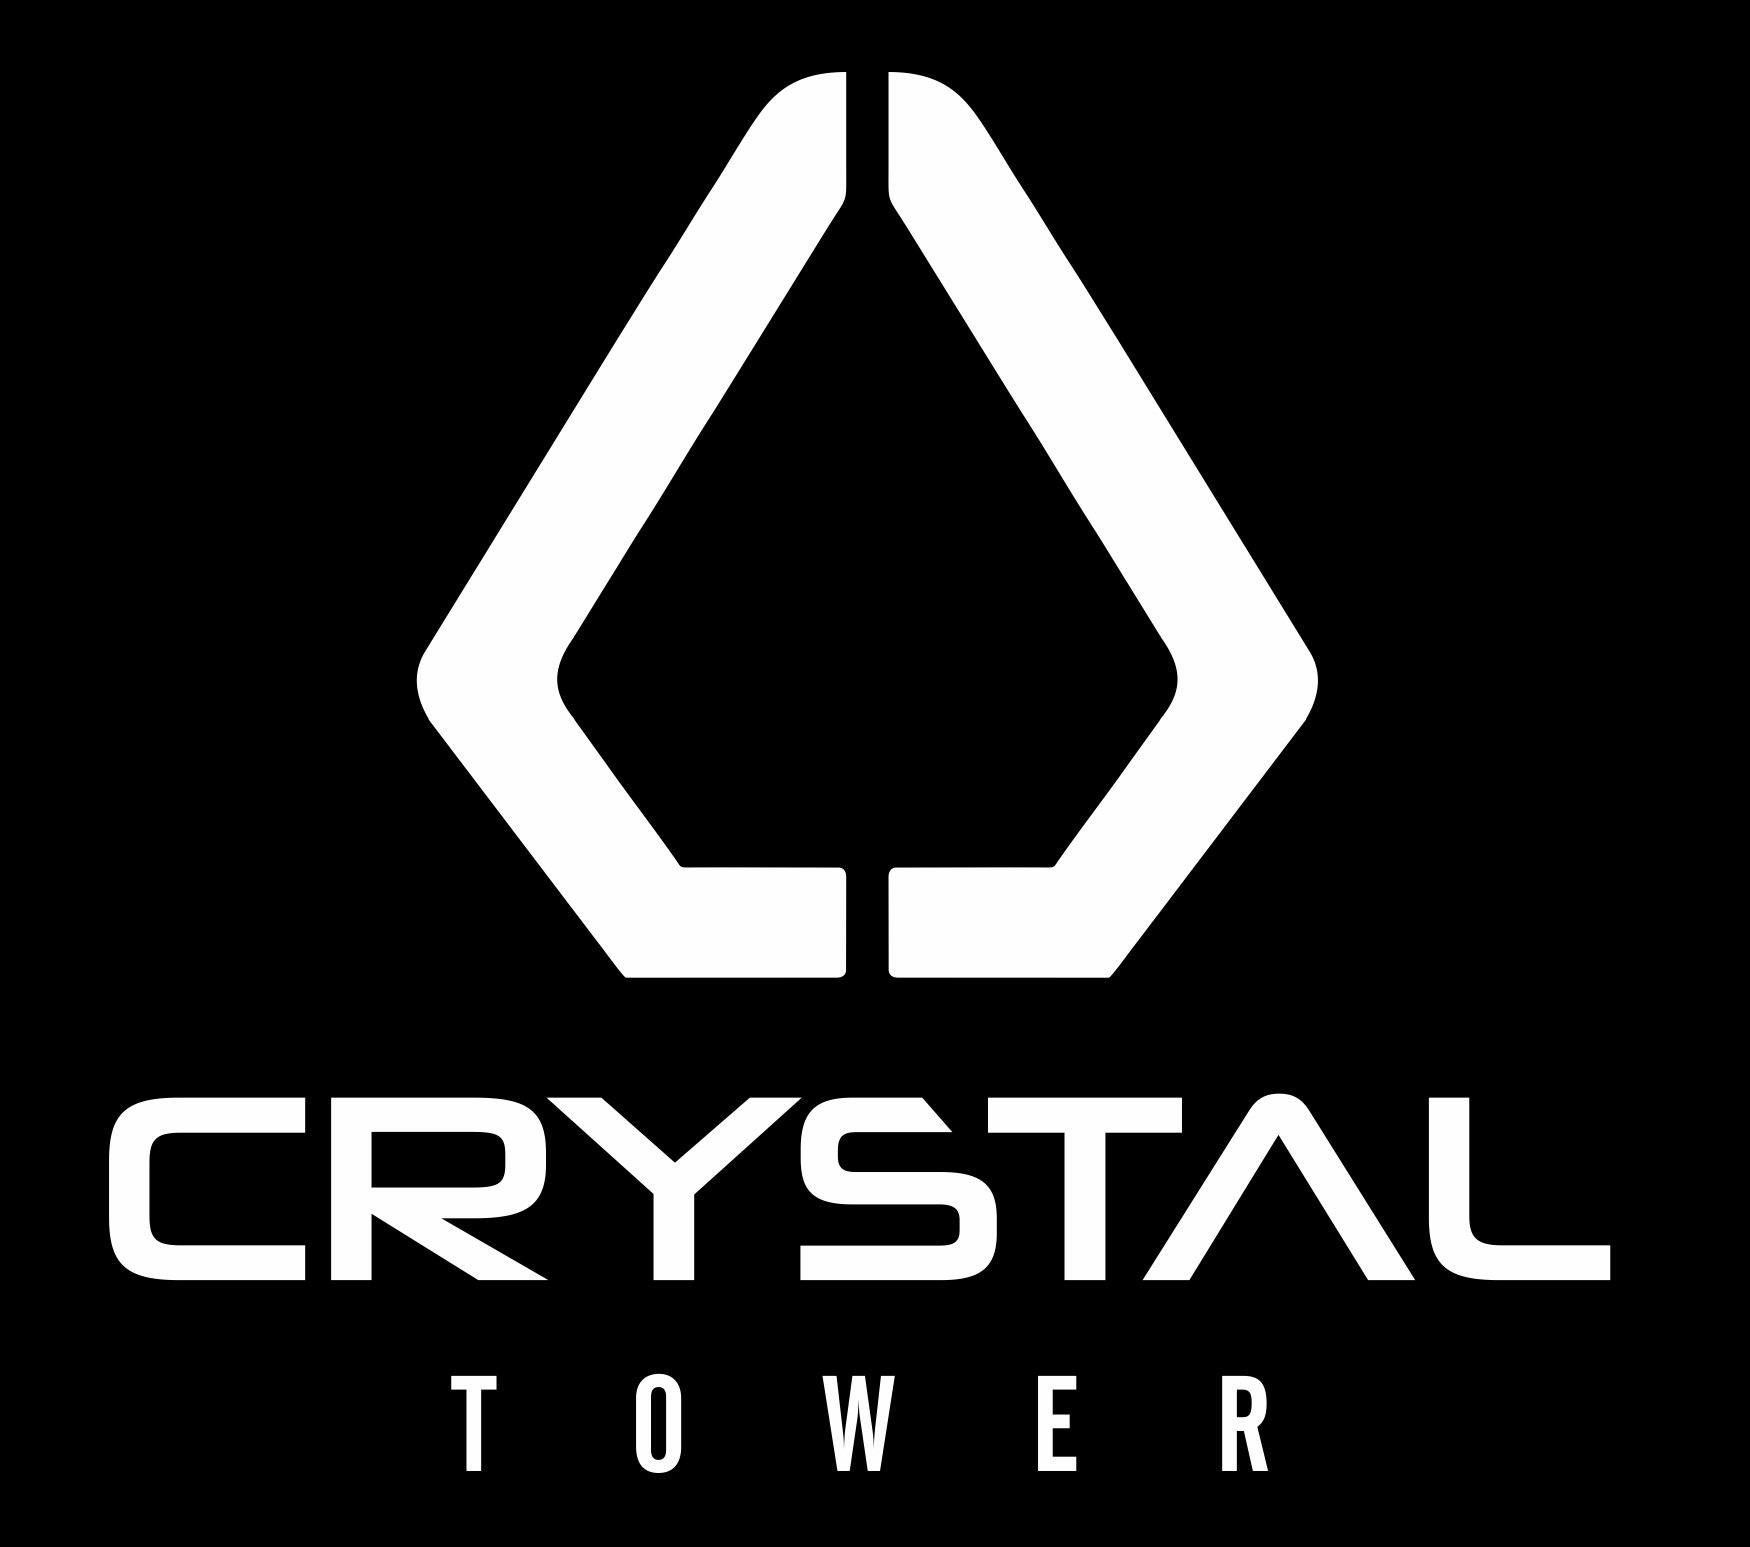 AD Agency Dubai client - Crystal Tower 